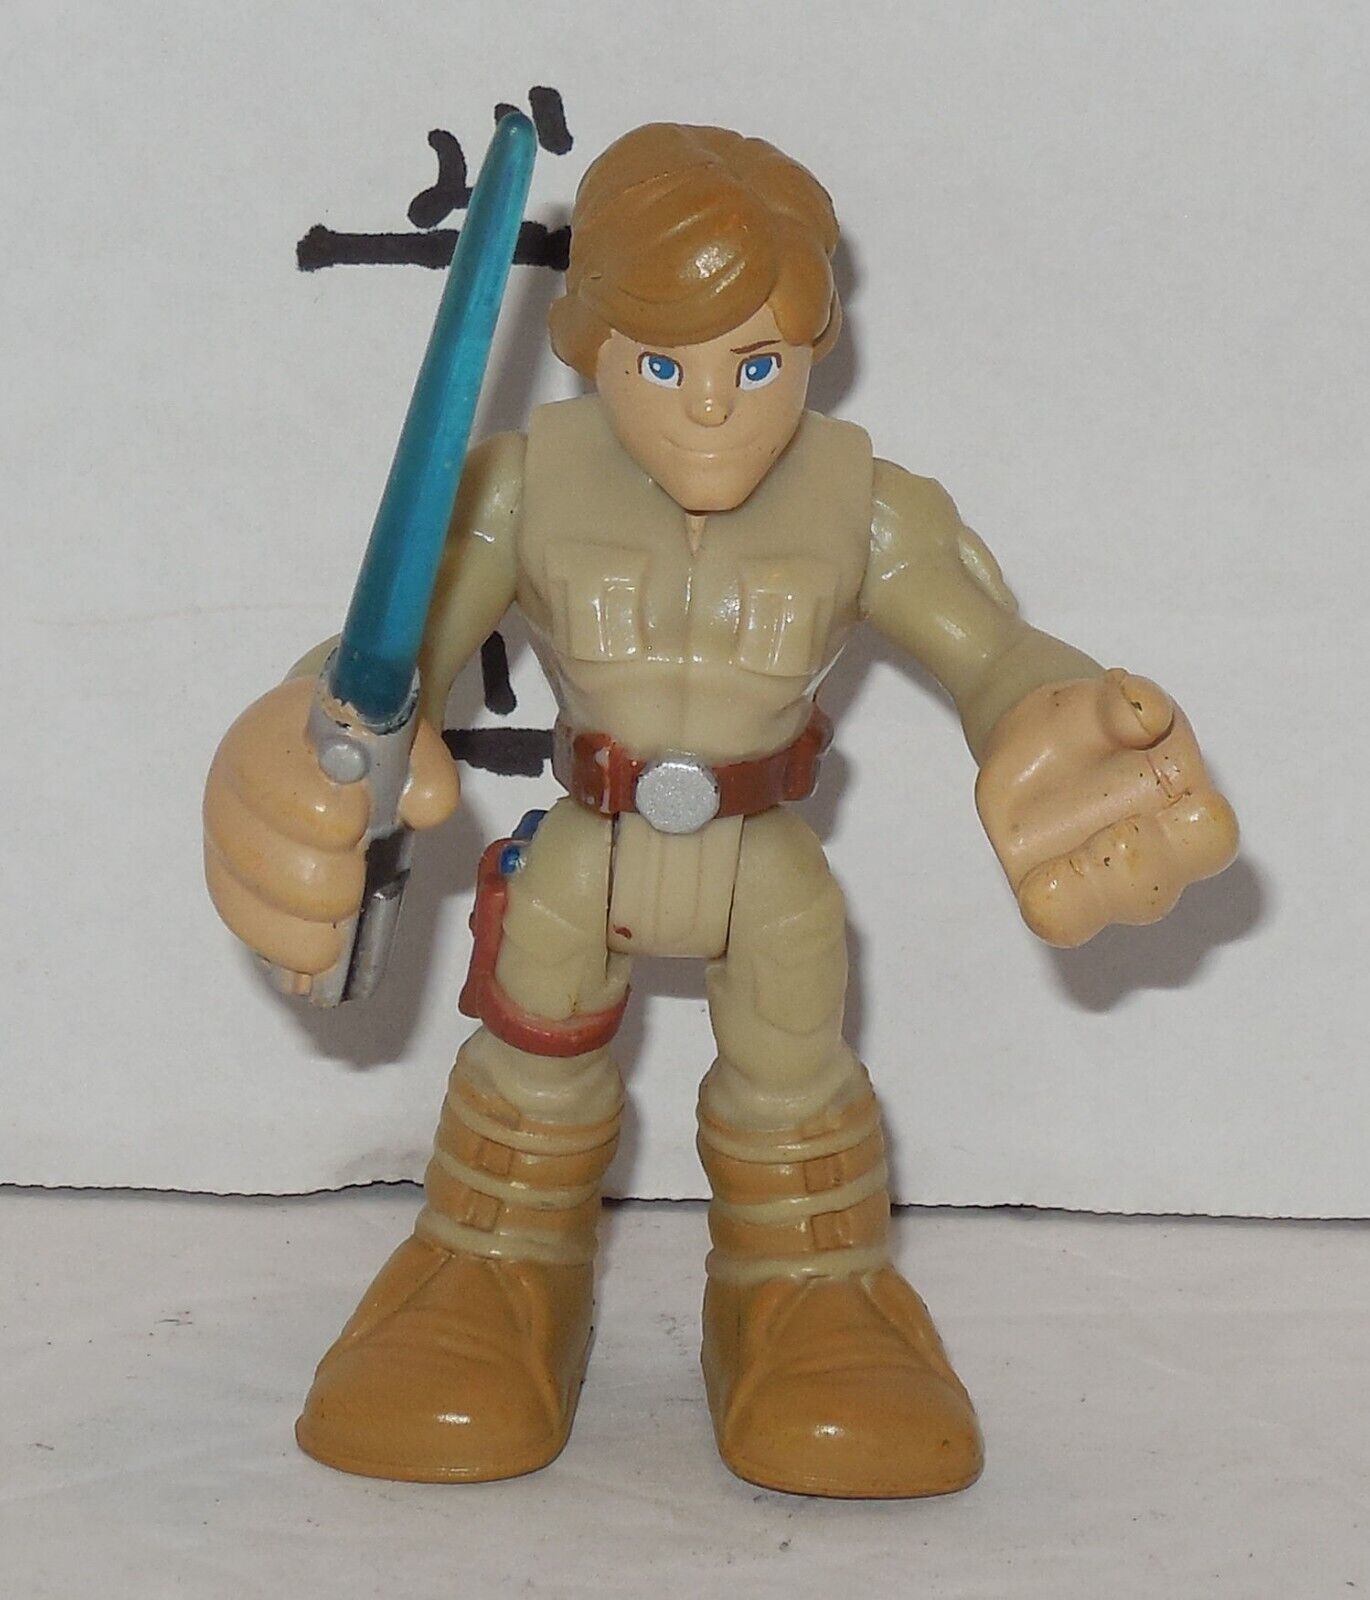 2011 Playskool Star Wars Galactic Heroes Luke Skywalker PVC Figure Cake Topper - $9.75